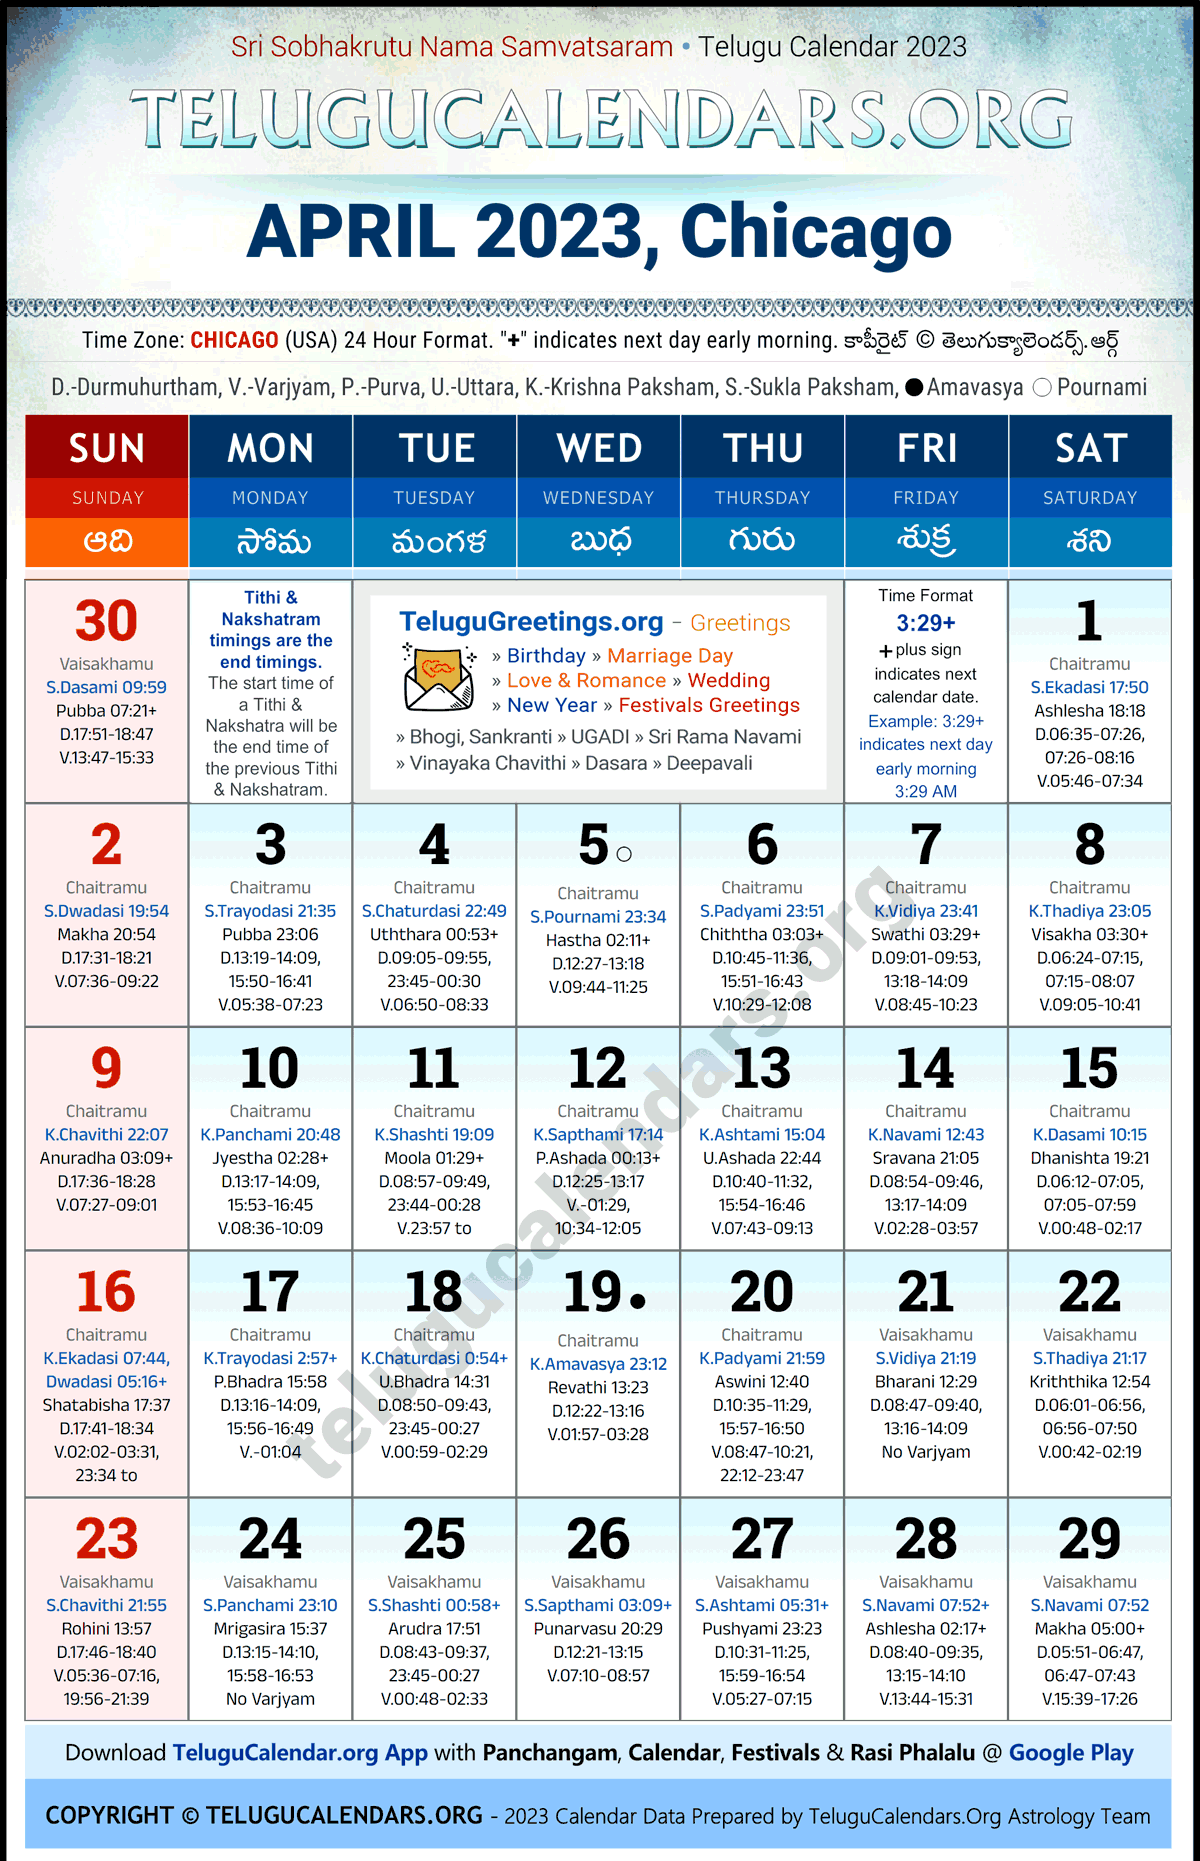 Telugu Calendar 2023 April Festivals for Chicago